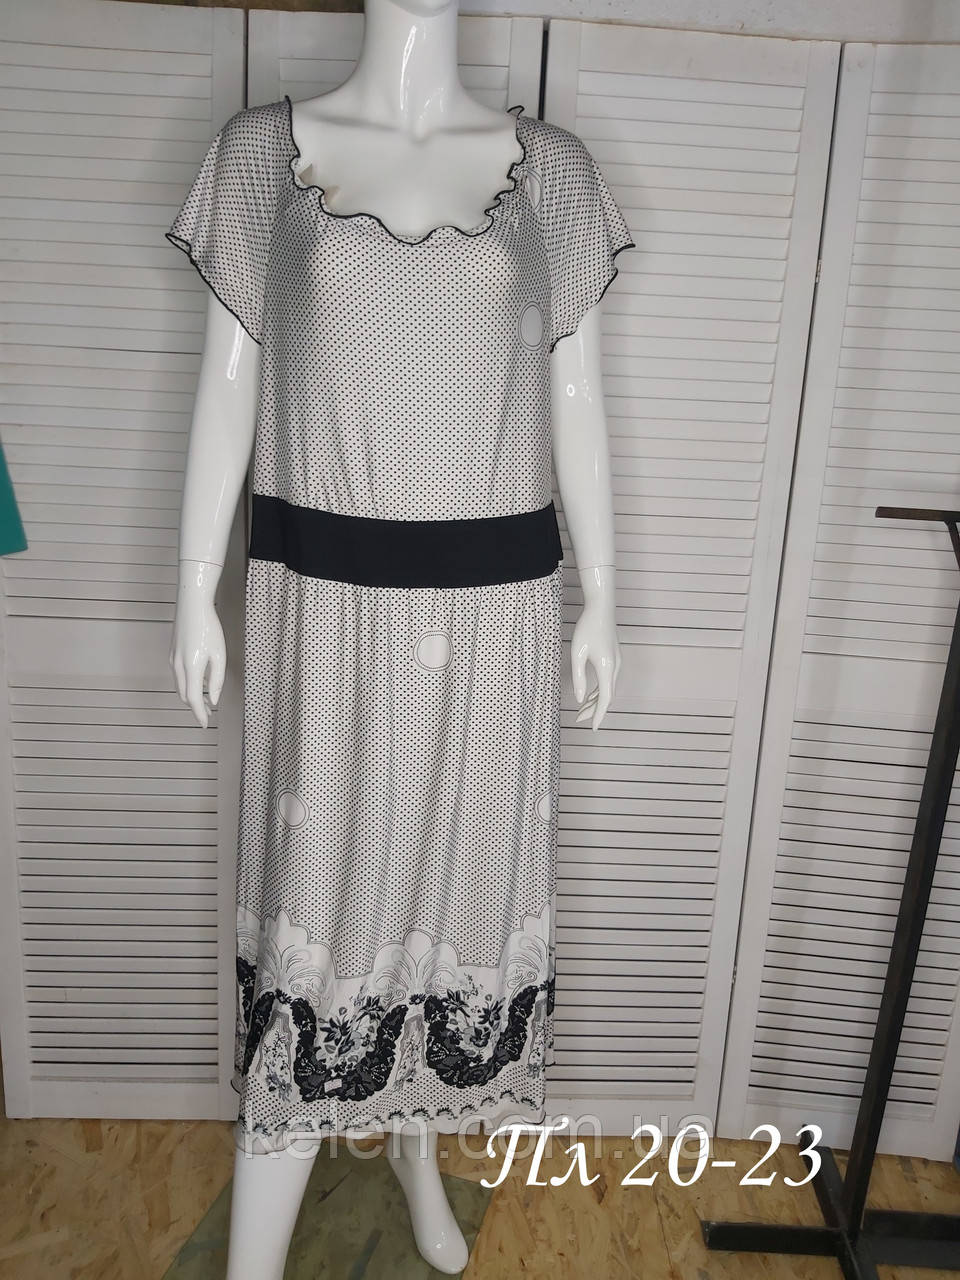 Біла довга сукня в горошек розмір 48-50 ( L)